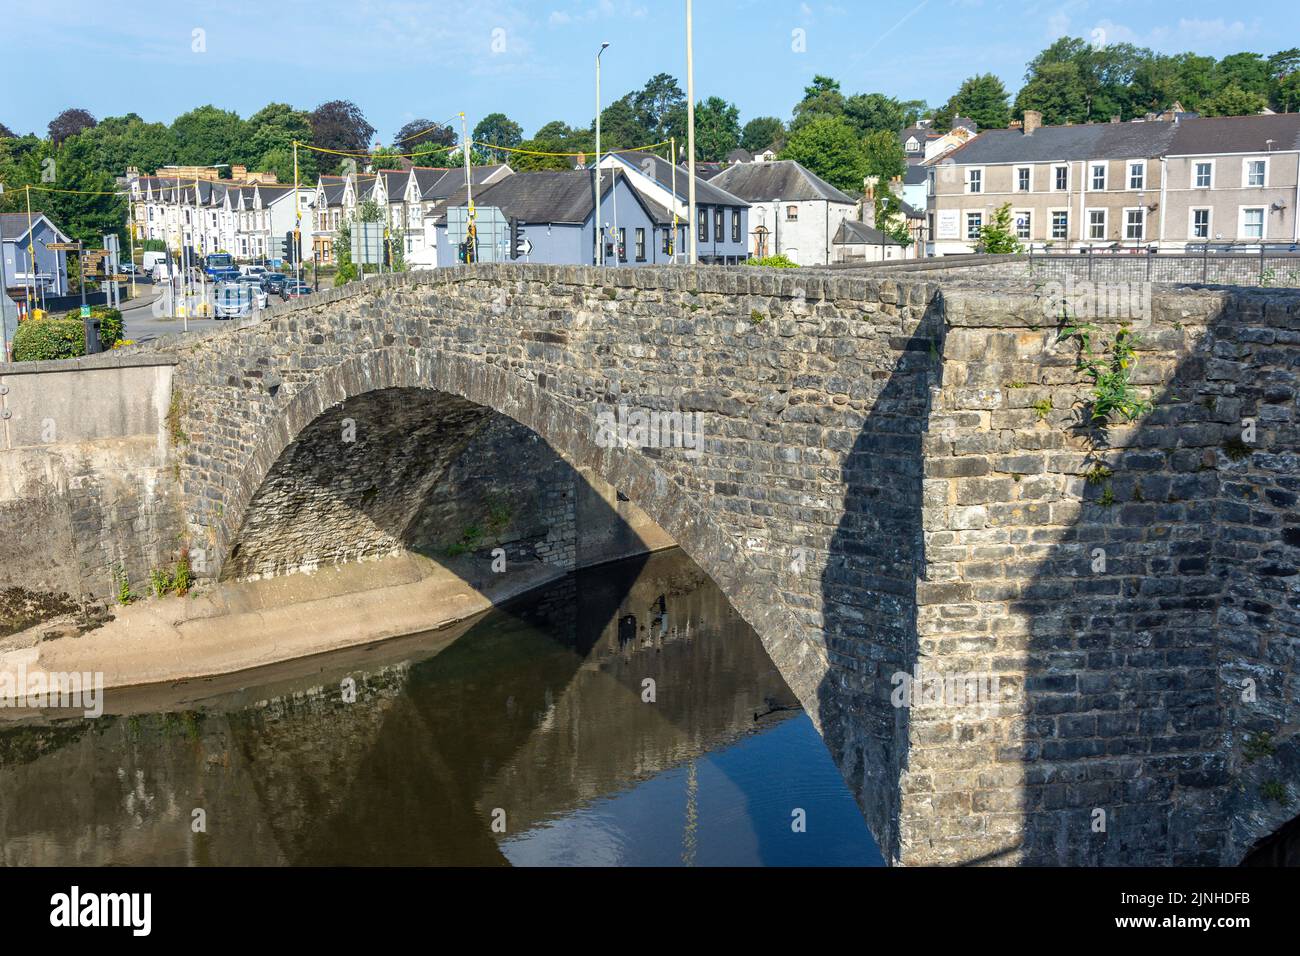 El Puente Viejo sobre el Río Ogmore, Bridgend (Pen-y-bont ar ogwr), Condado de Bridgend Borough, Gales (Cymru), Reino Unido Foto de stock